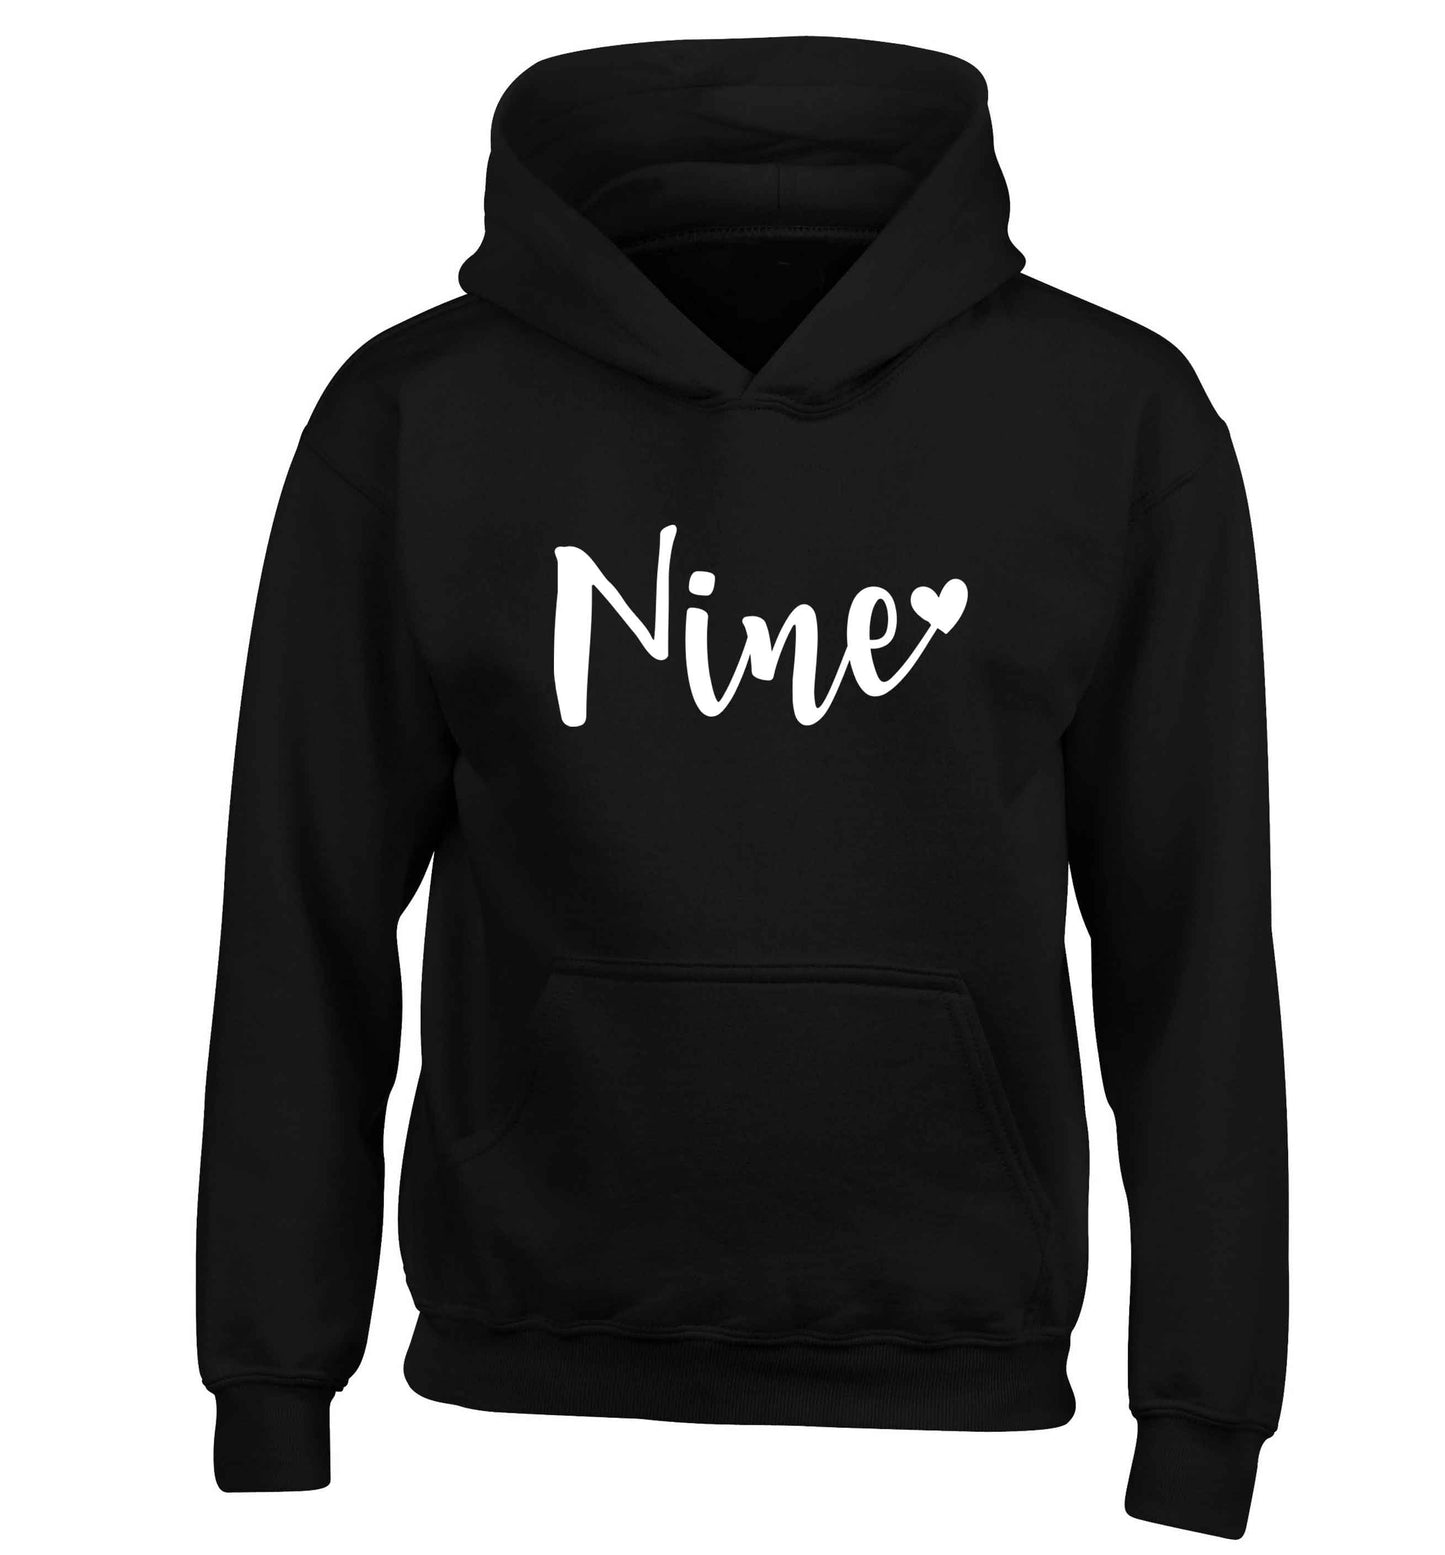 Nine and heart children's black hoodie 12-13 Years